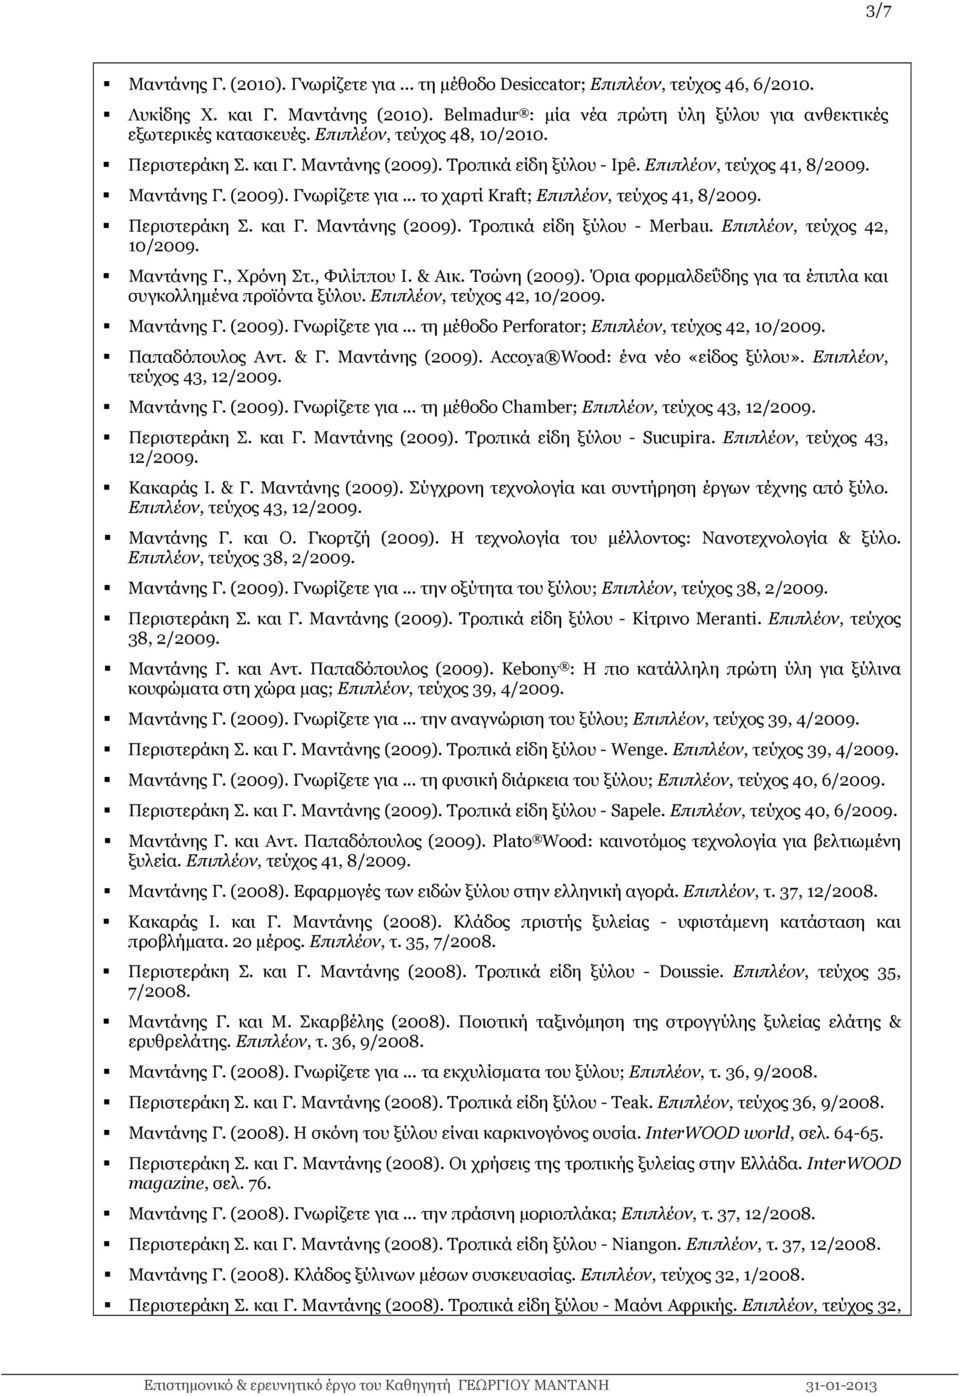 .. το χαρτί Kraft; Επιπλέον, τεύχος 41, 8/2009. Περιστεράκη Σ. και Γ. Μαντάνης (2009). Τροπικά είδη ξύλου - Merbau. Επιπλέον, τεύχος 42, 10/2009. Μαντάνης Γ., Χρόνη Στ., Φιλίππου Ι. & Αικ.